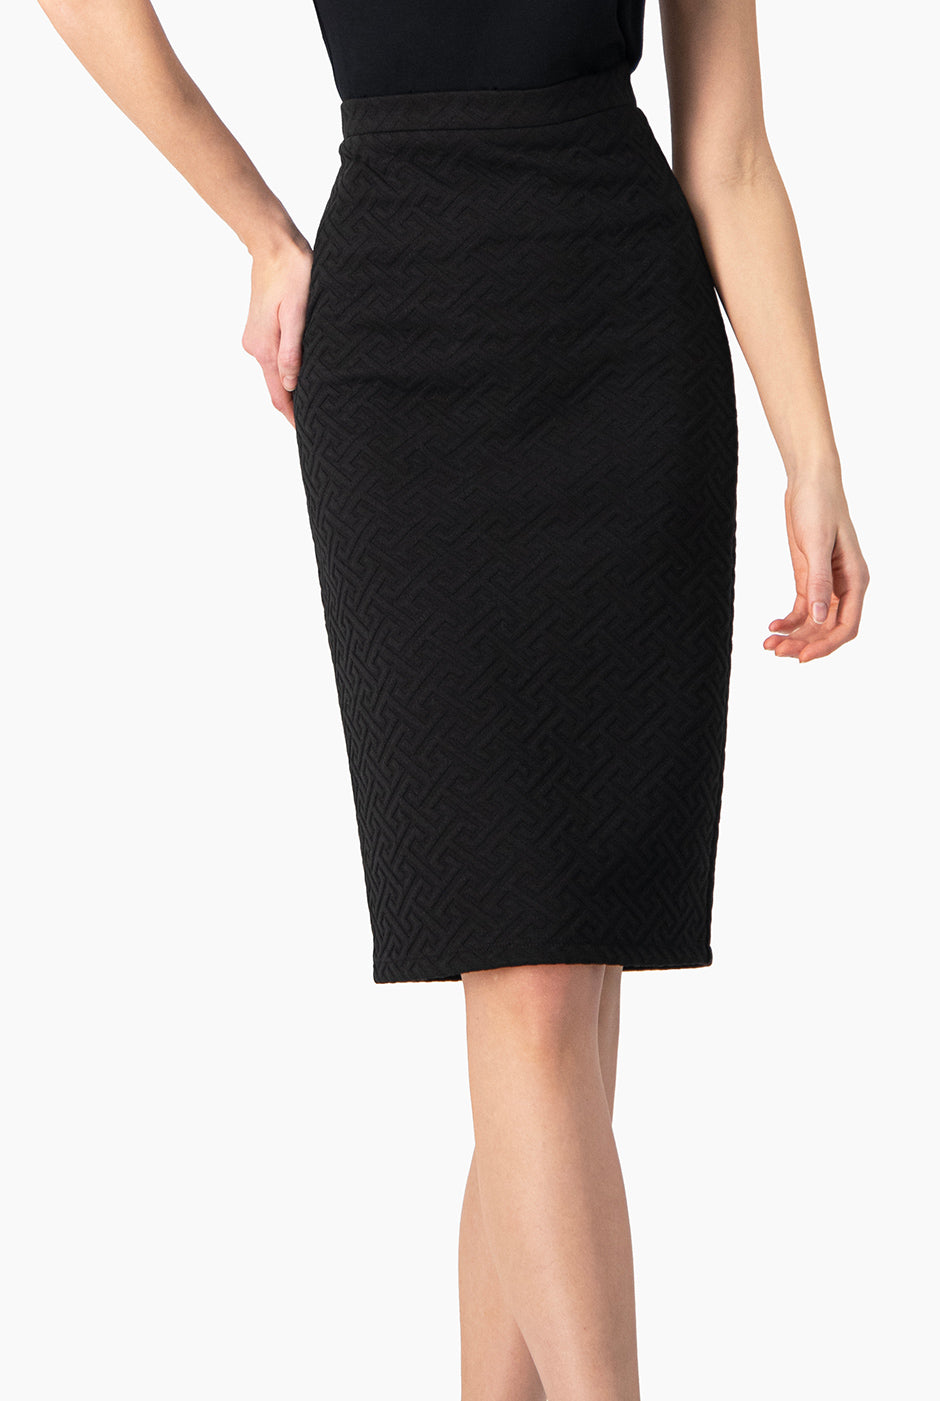 Falda ajustado color negra con abertura trasera